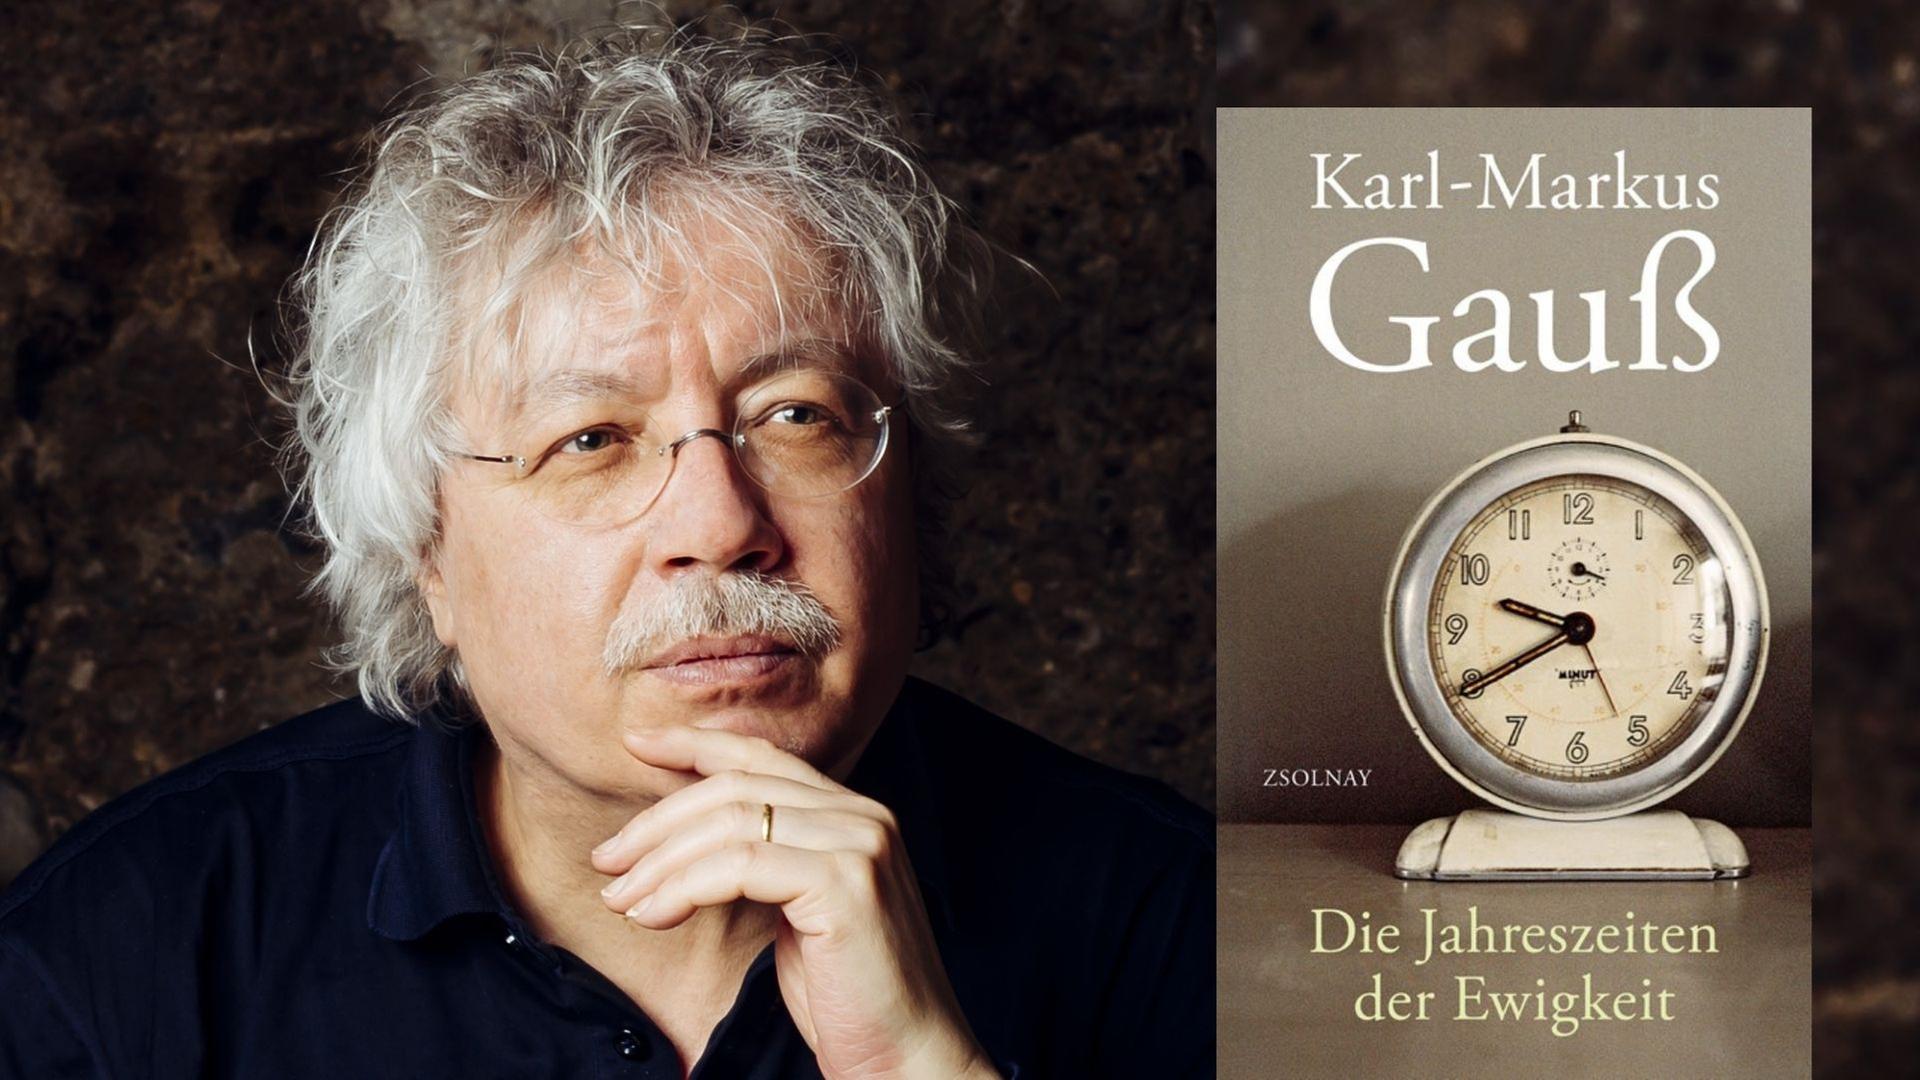 Karl-Markus Gauß: "Die Jahreszeiten der Ewigkeit"